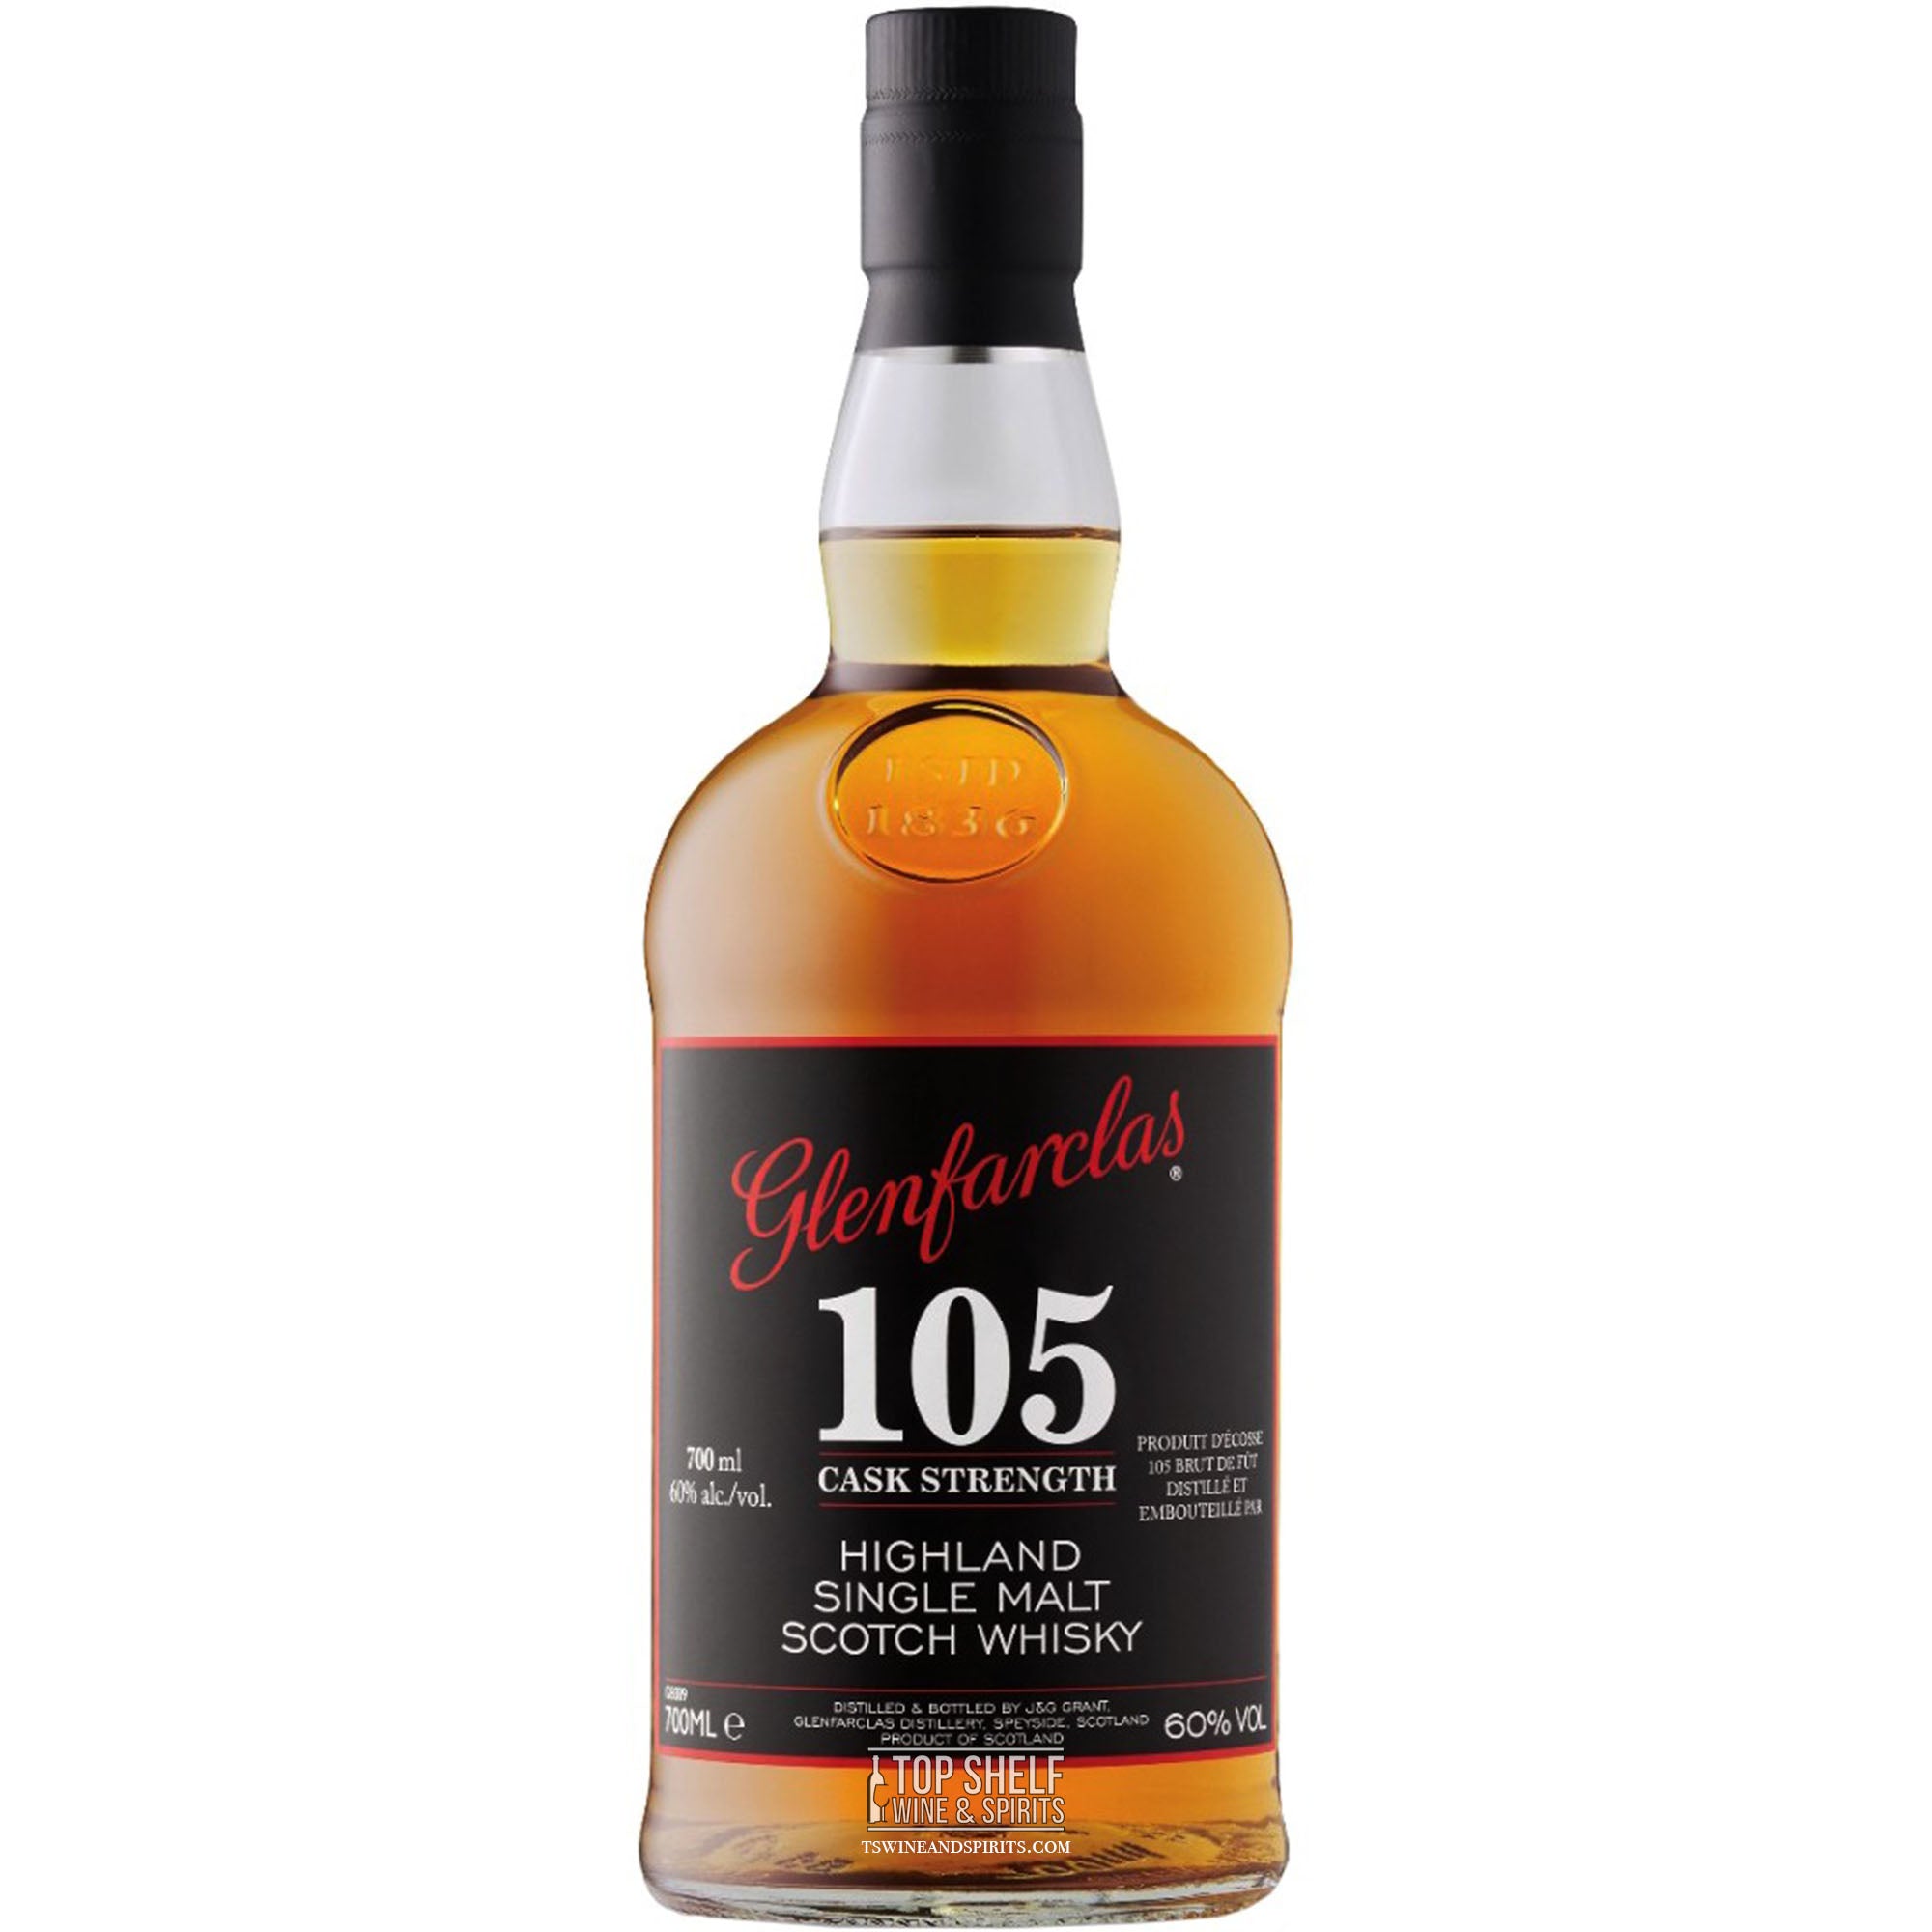 Glenfarclas 105 Cask Strength Scotch Whisky